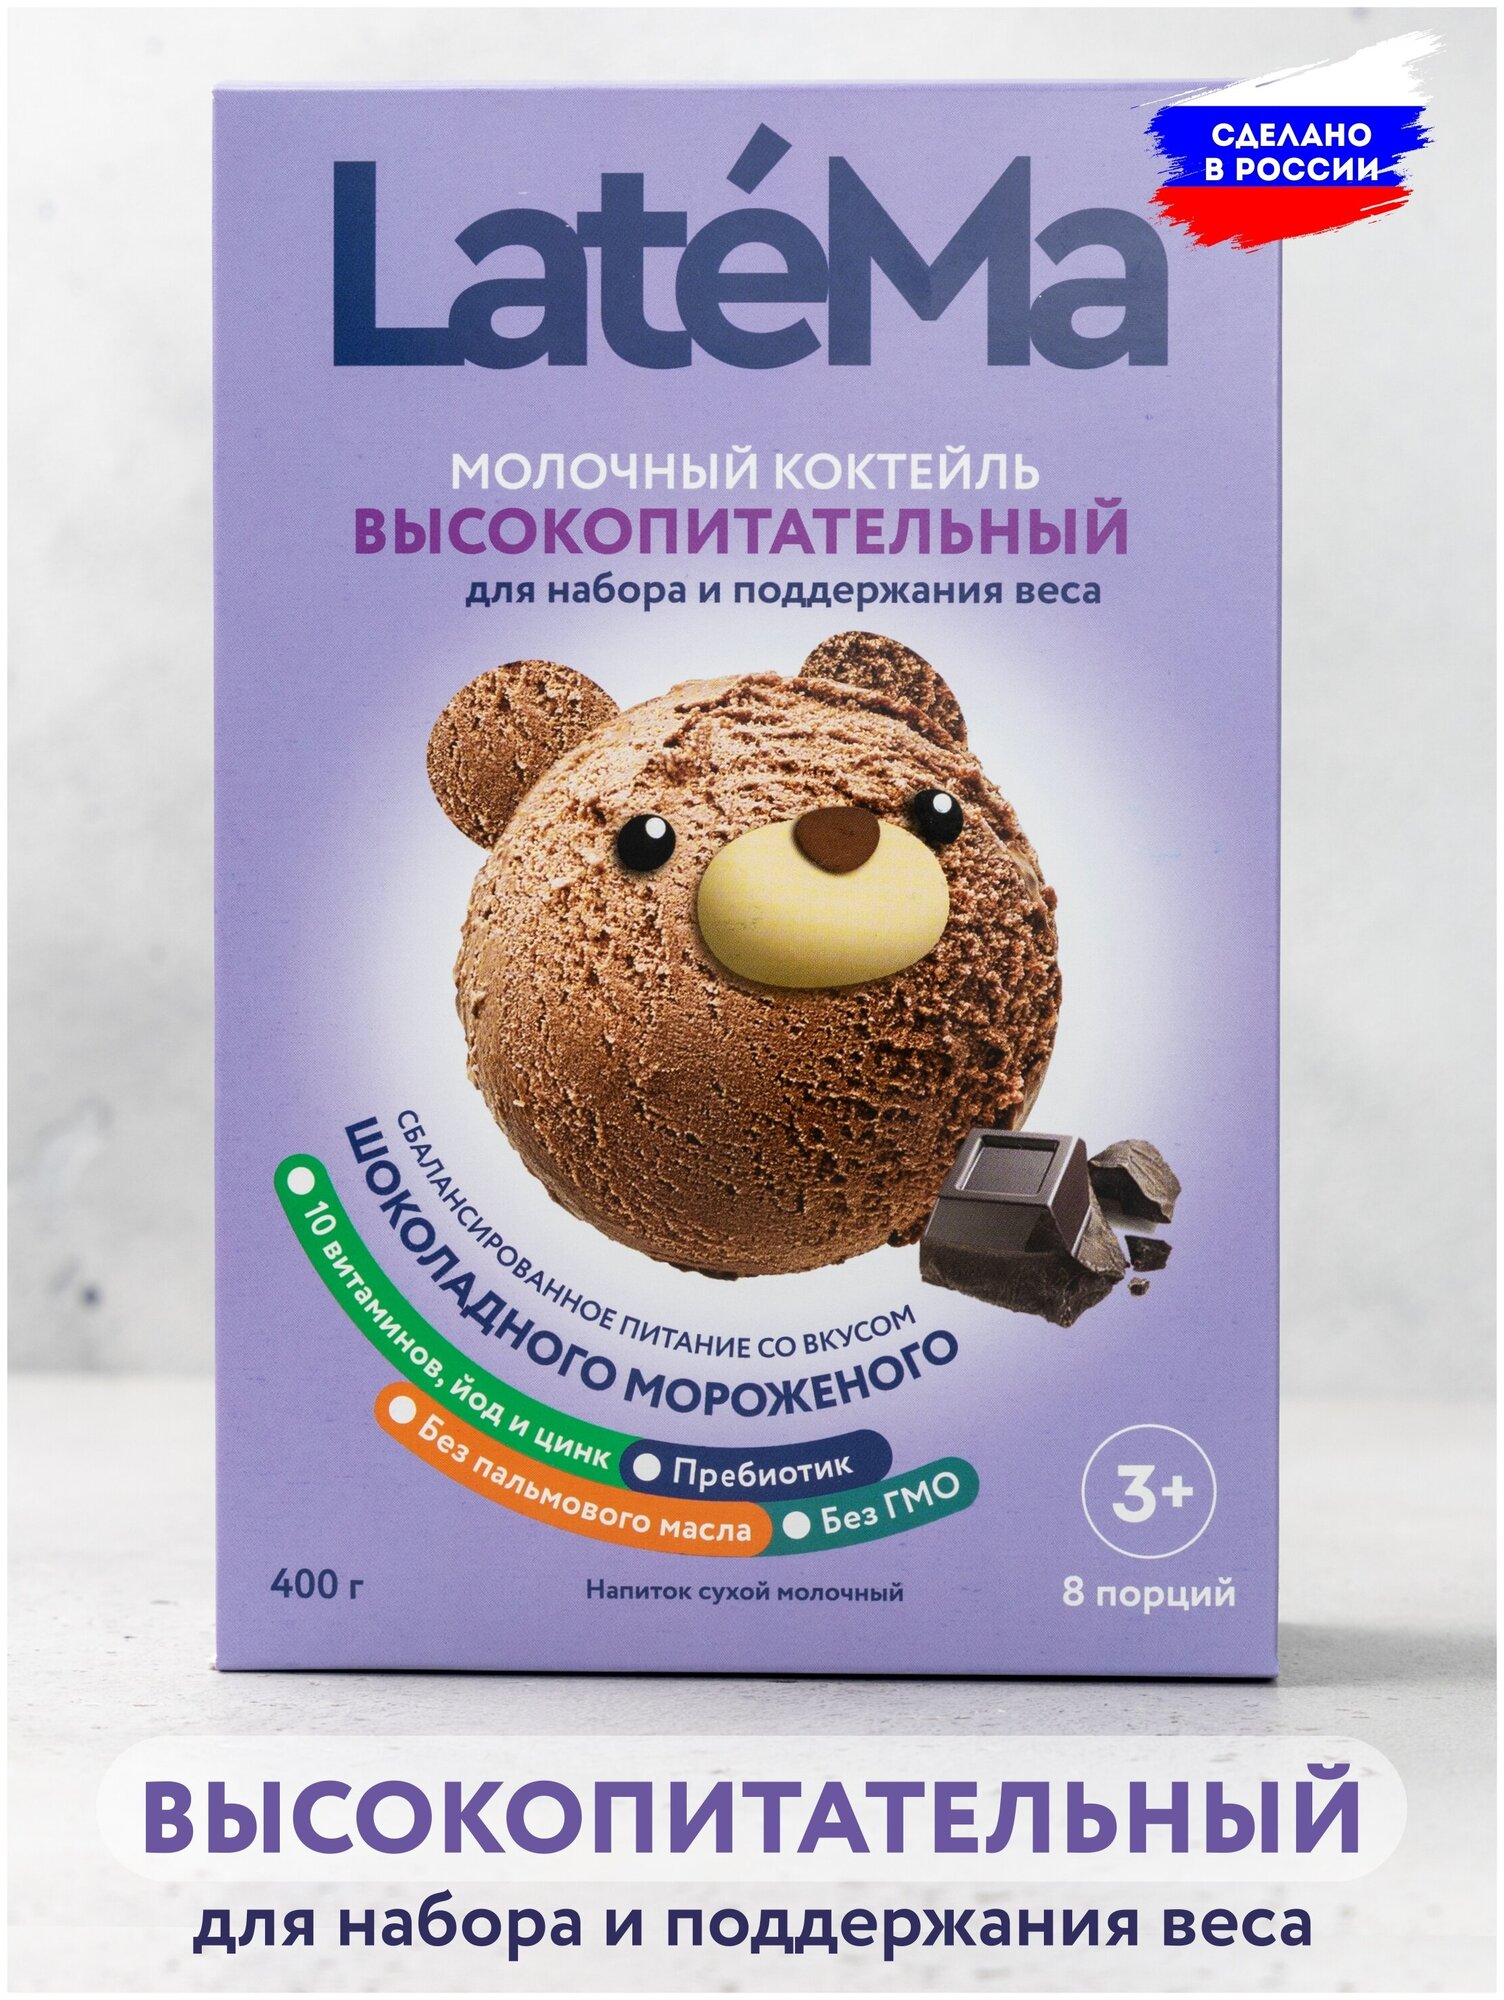 Молочная смесь для приготовления коктейля LateMa высокопитательная (для набора и поддержания веса) со вкусом шоколадного мороженого